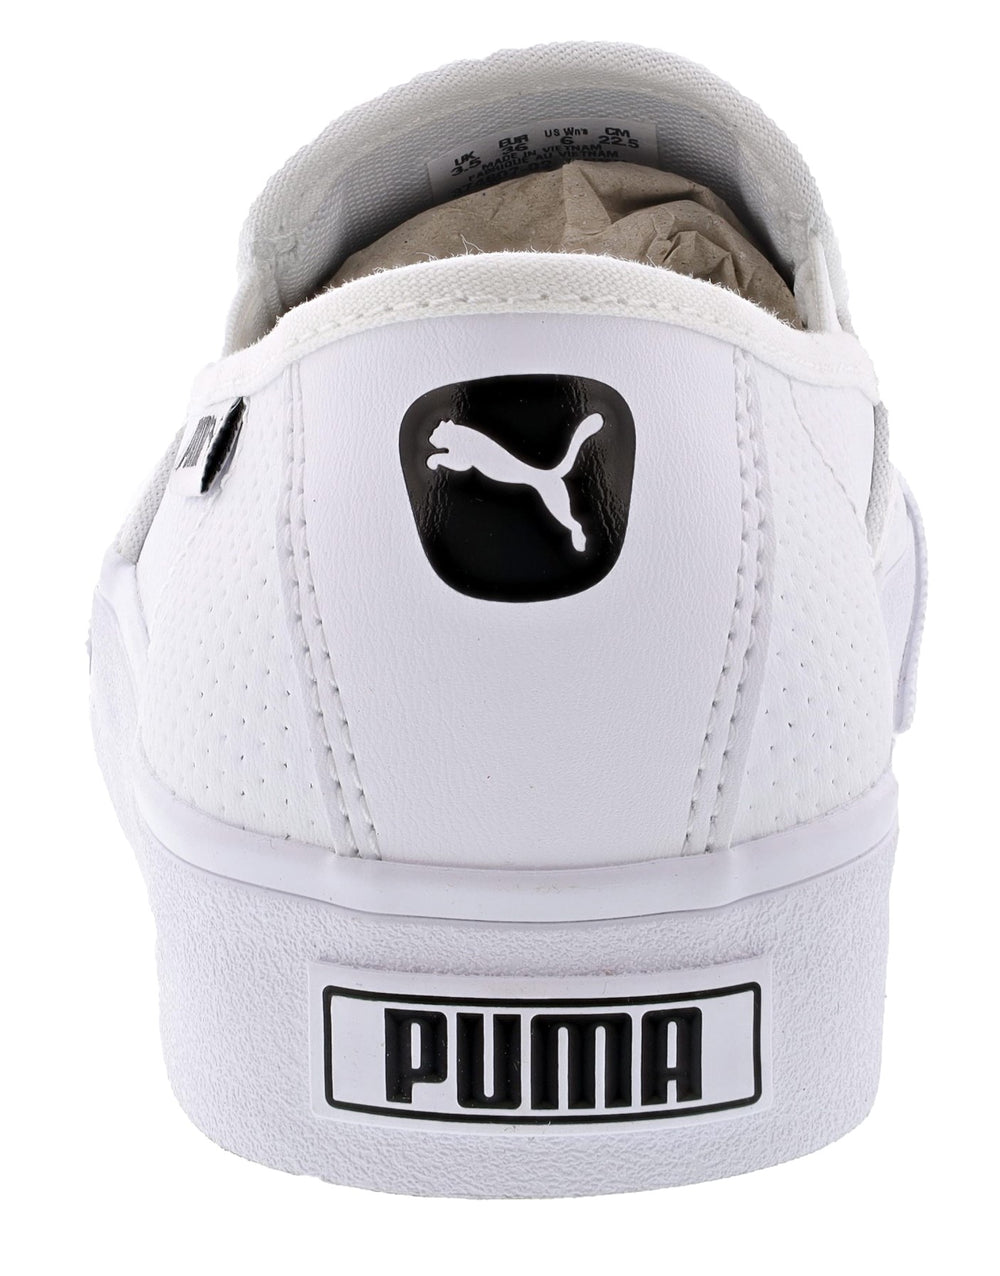 PUMA Men's Bari Slip On Sneaker Women's Size US... - Depop